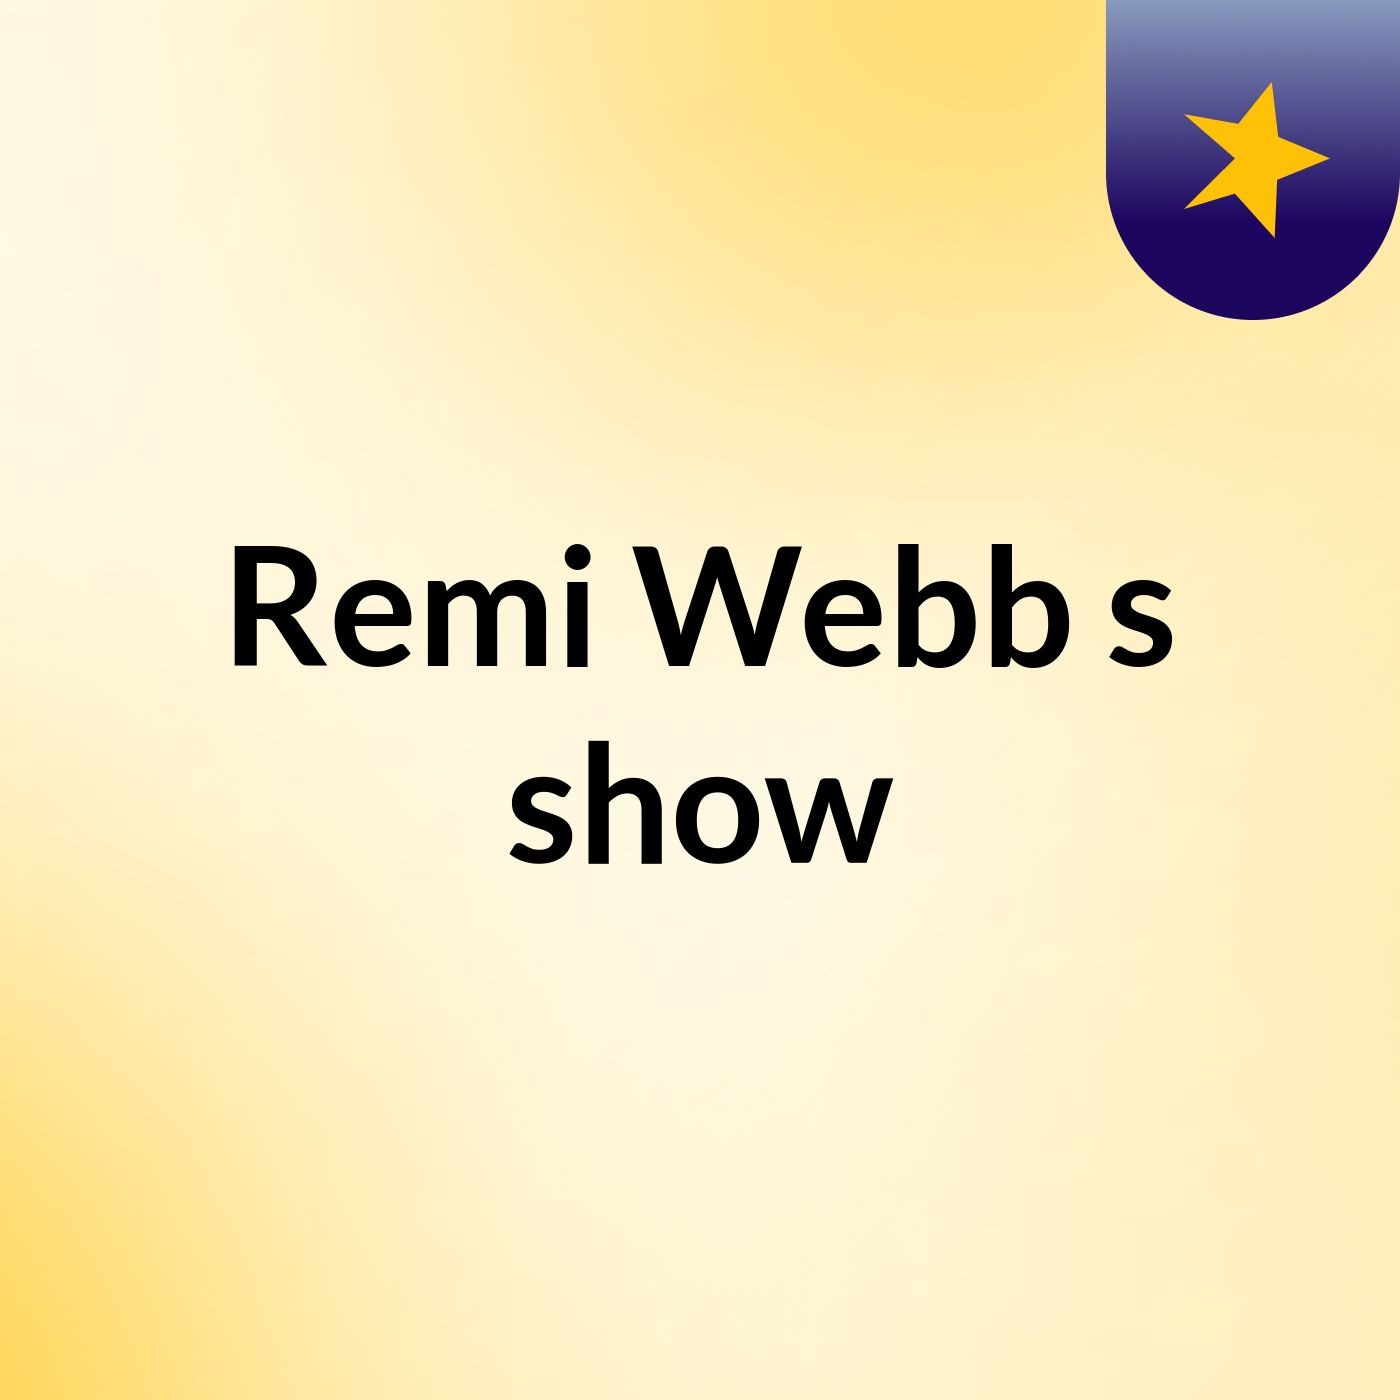 Episode 5 - Remi Webb's show